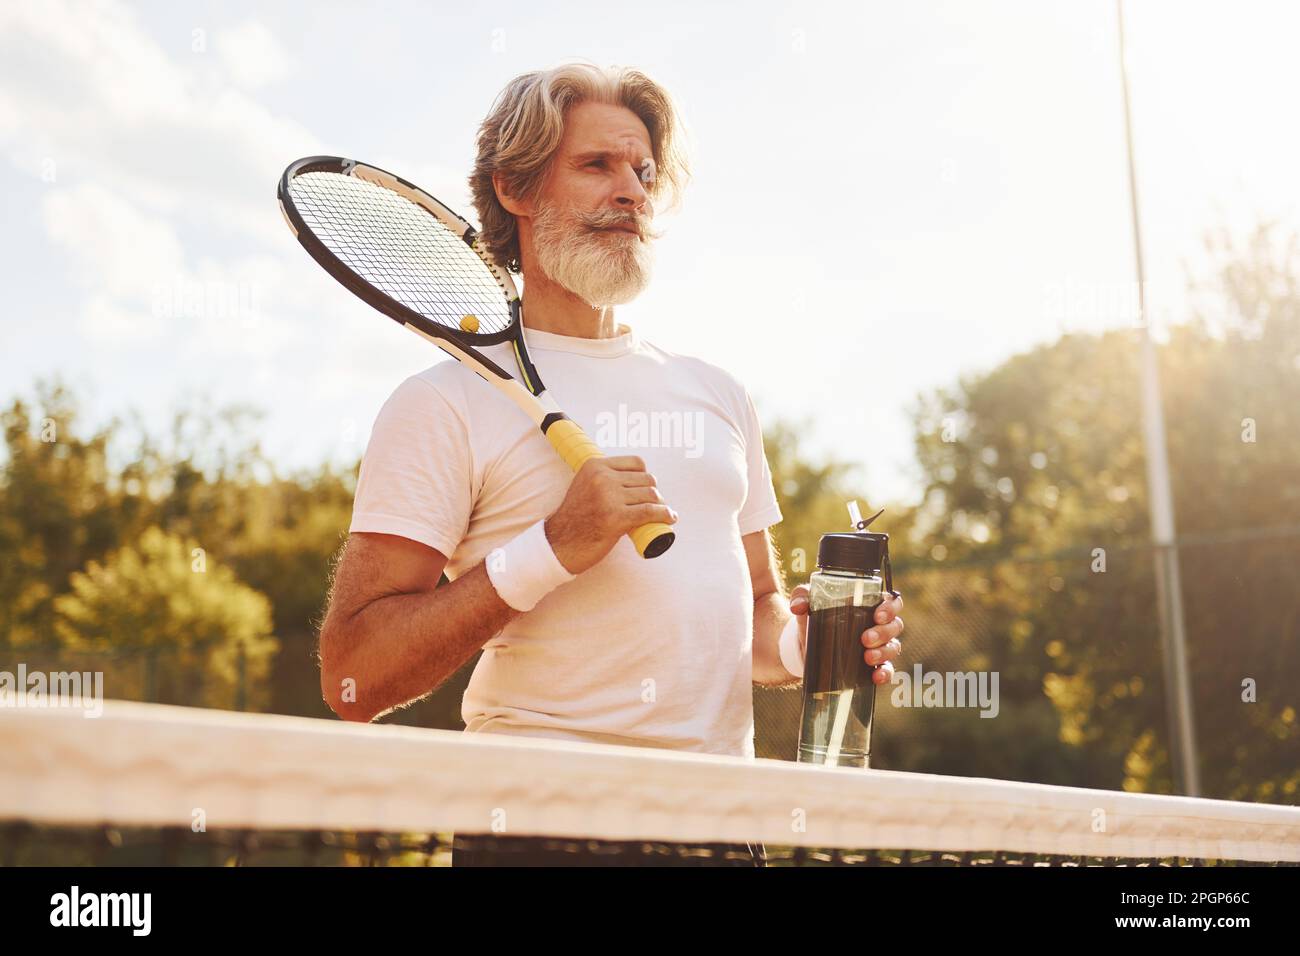 Raquette de maintien. Homme de style moderne senior avec raquette en plein  air sur un court de tennis en journée Photo Stock - Alamy